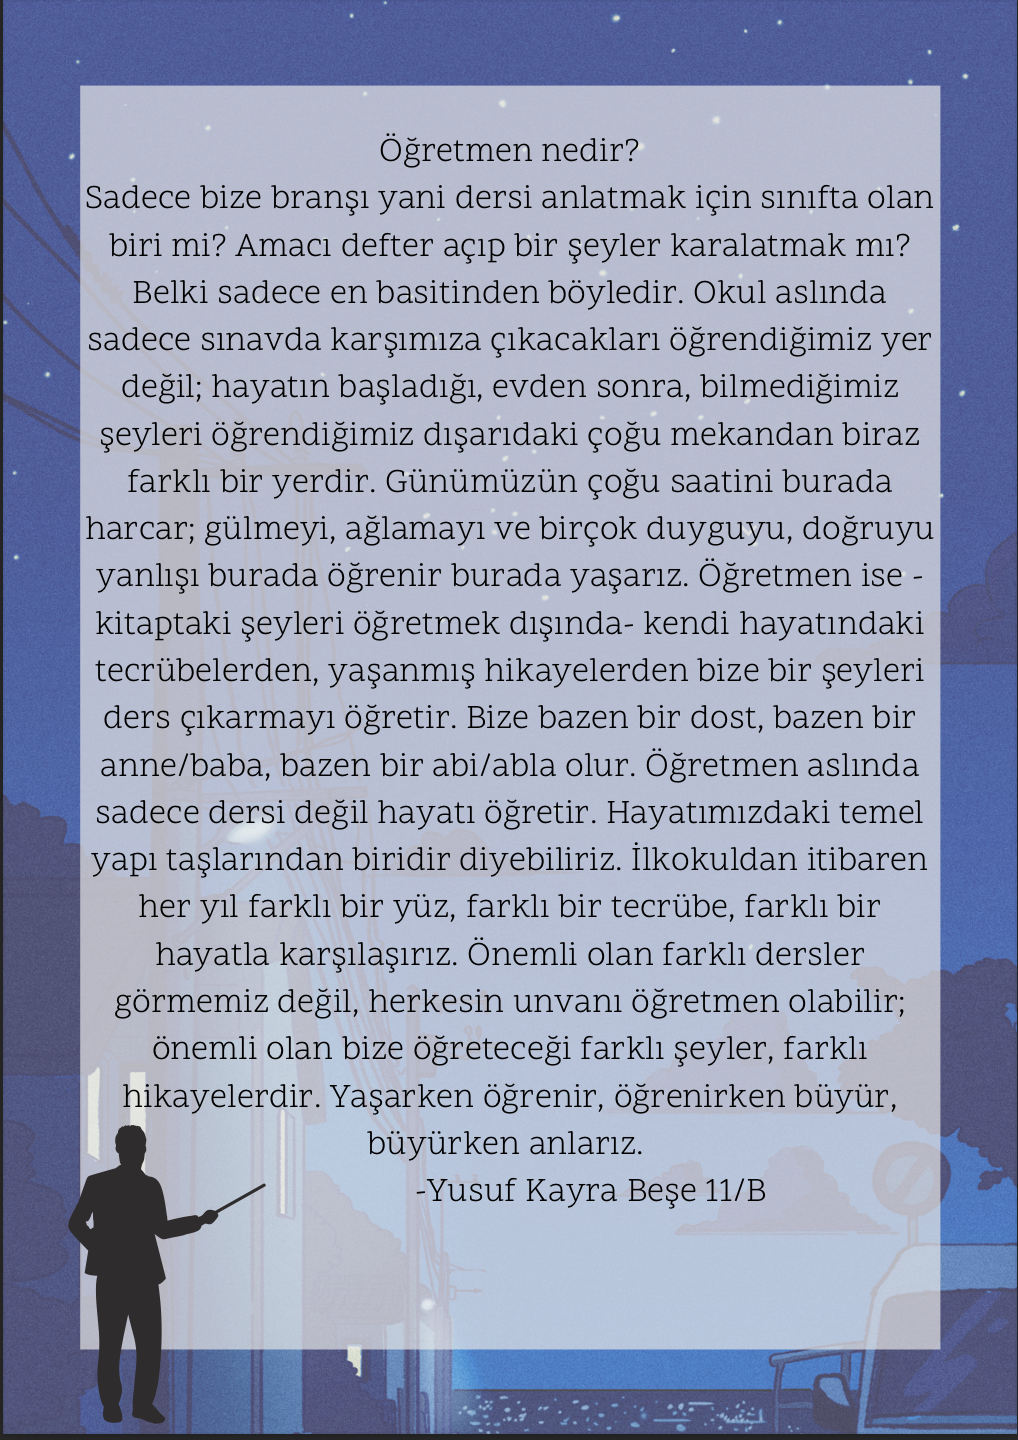 Kasım Rüzgarı by Süleyman Baran Dazıroğlu - Illustrated by Keçiören Sosyal Bilimler Lisesi - Ourboox.com